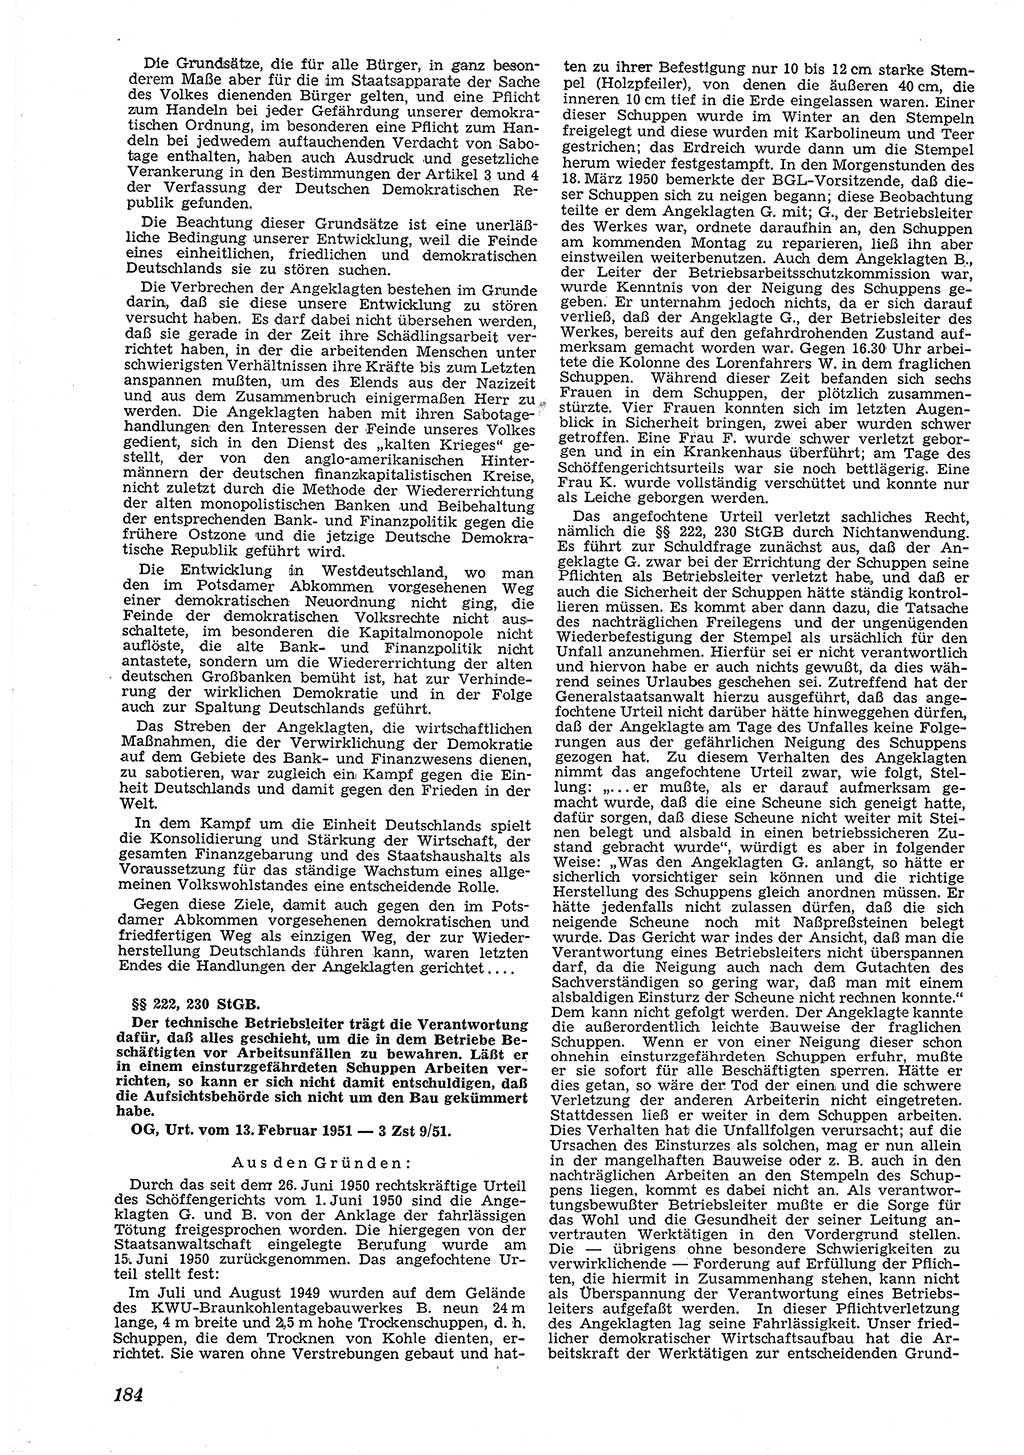 Neue Justiz (NJ), Zeitschrift für Recht und Rechtswissenschaft [Deutsche Demokratische Republik (DDR)], 5. Jahrgang 1951, Seite 184 (NJ DDR 1951, S. 184)